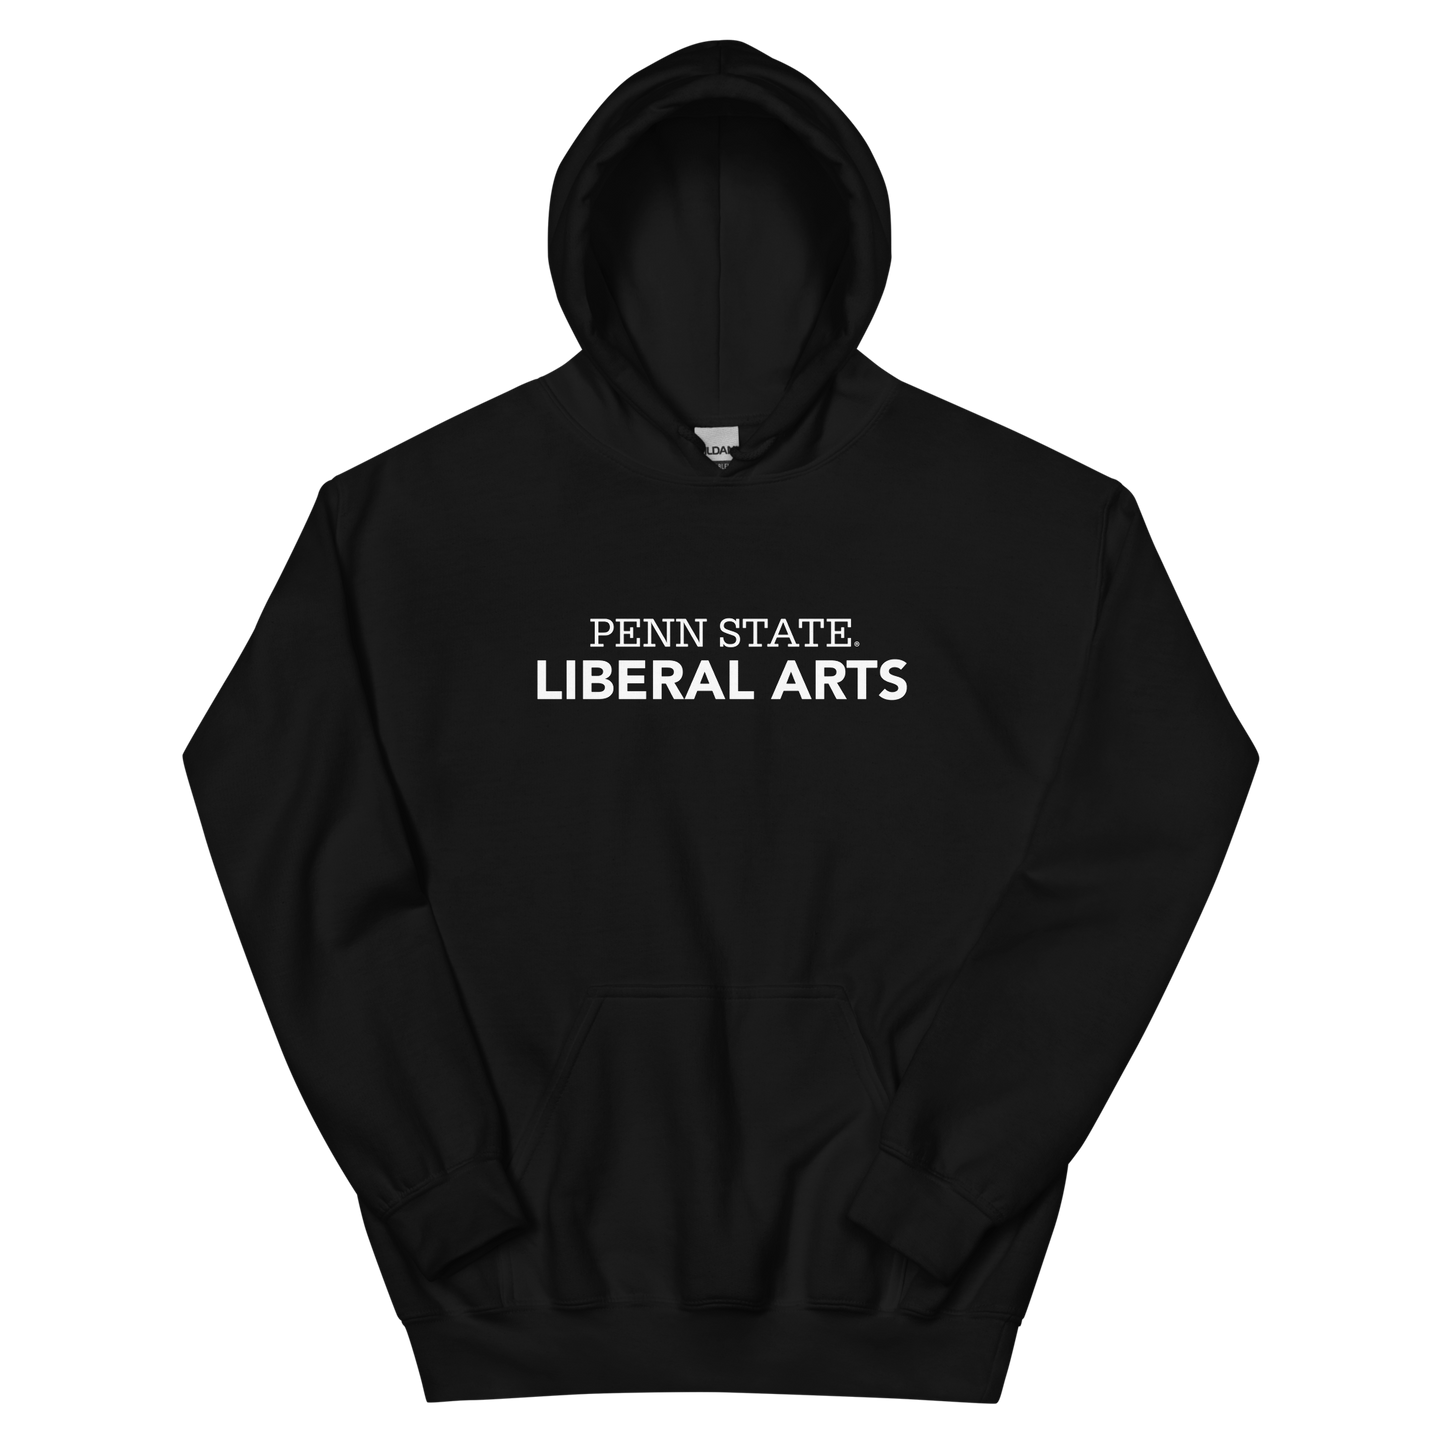 Liberal Arts Unisex Hoodie